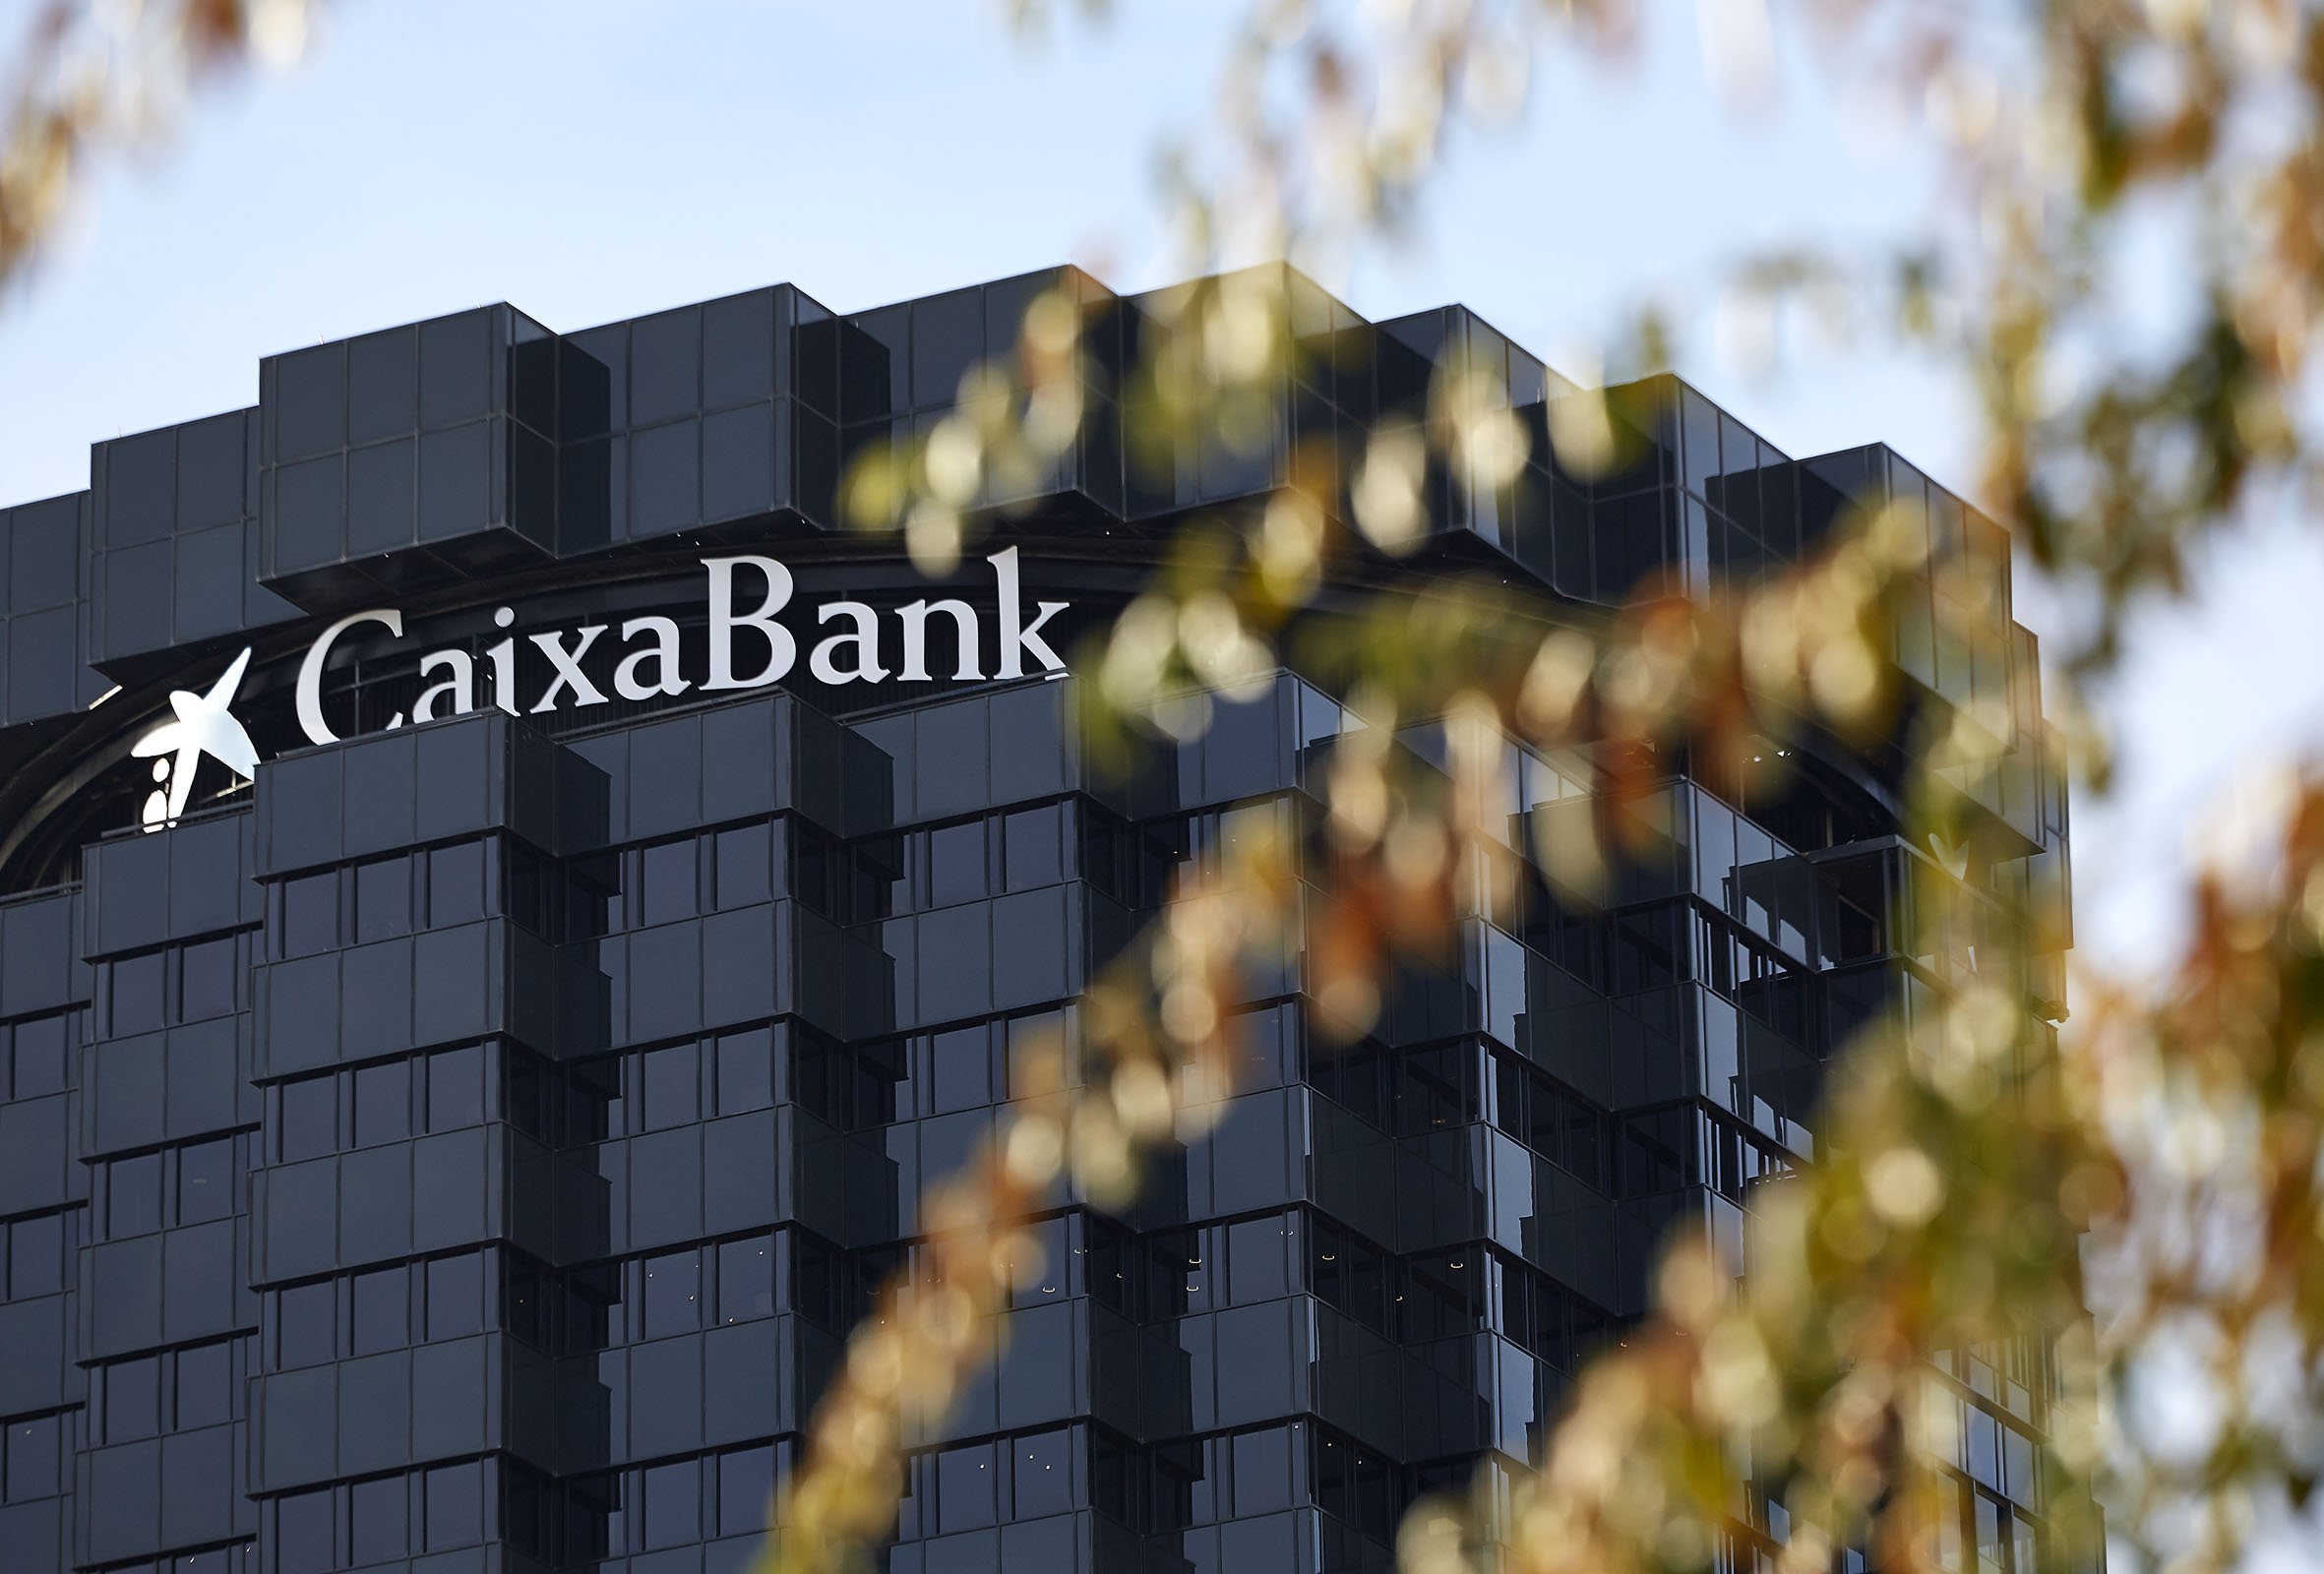 CaixaBank, entitat líder en igualtat de gènere al món, segons Bloomberg